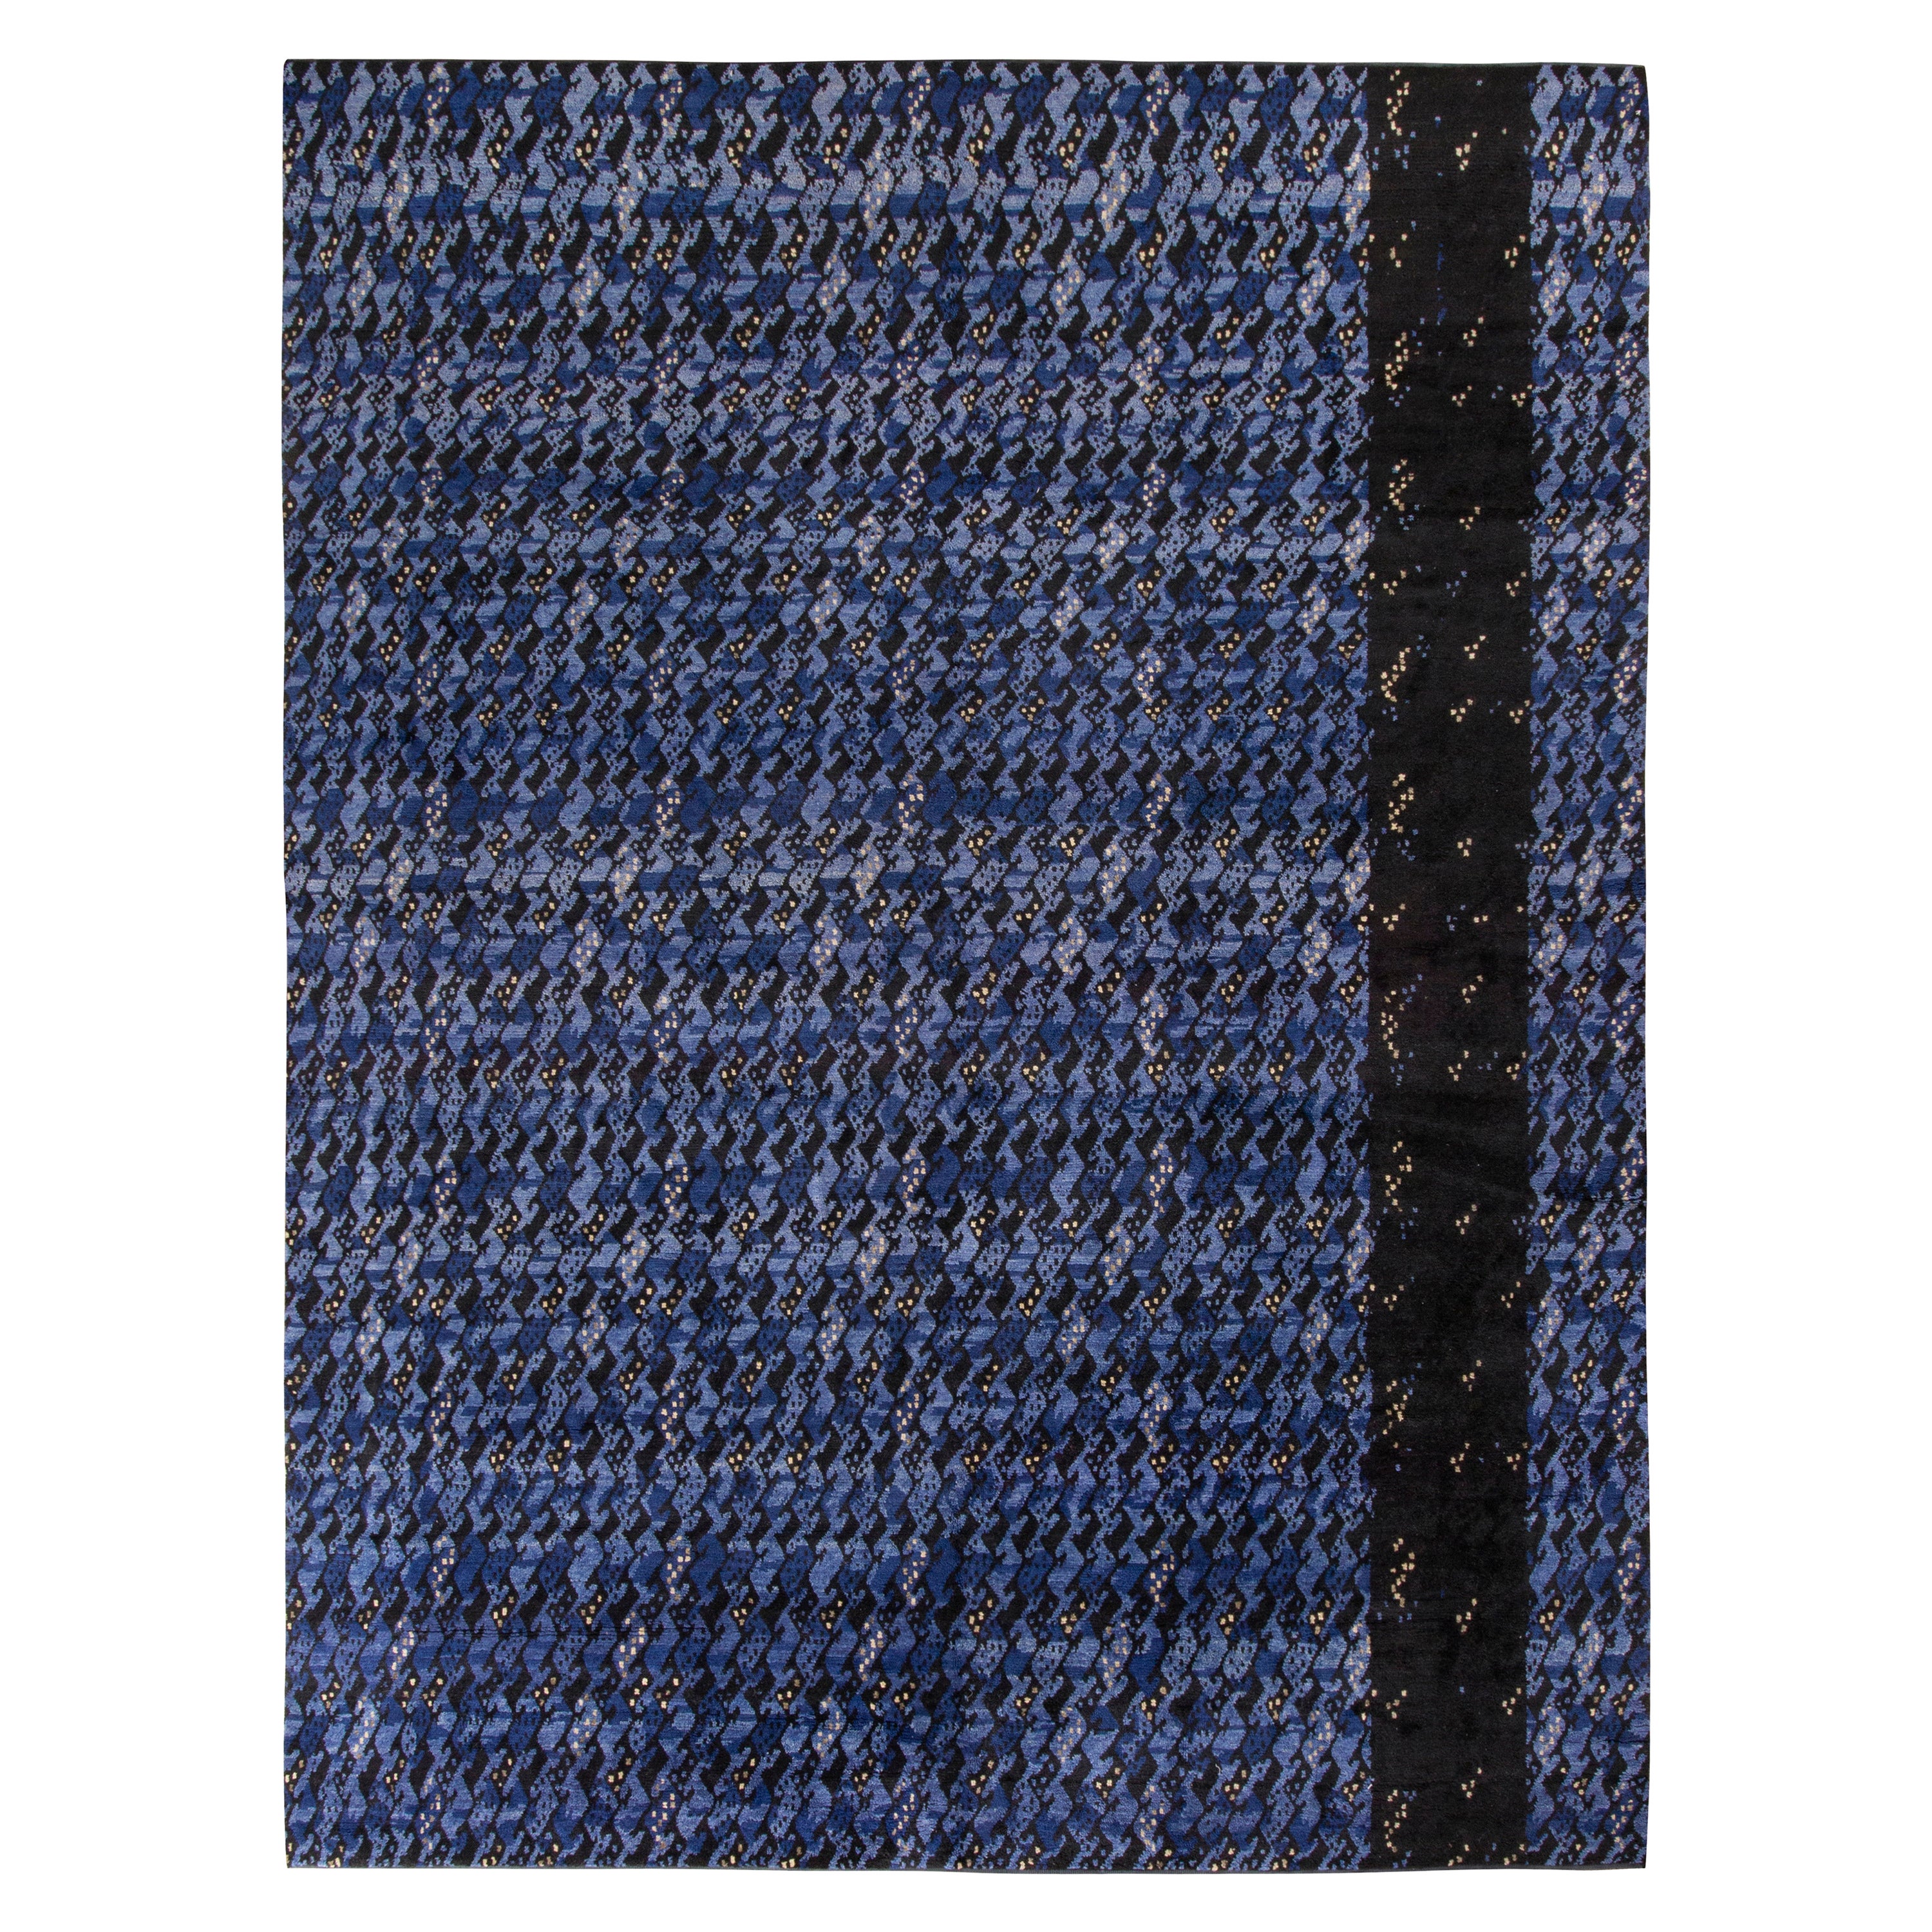 Teppich & Kilims Skandinavischer Stil Teppich in Allover Blau, Schwarz mit geometrischem Muster